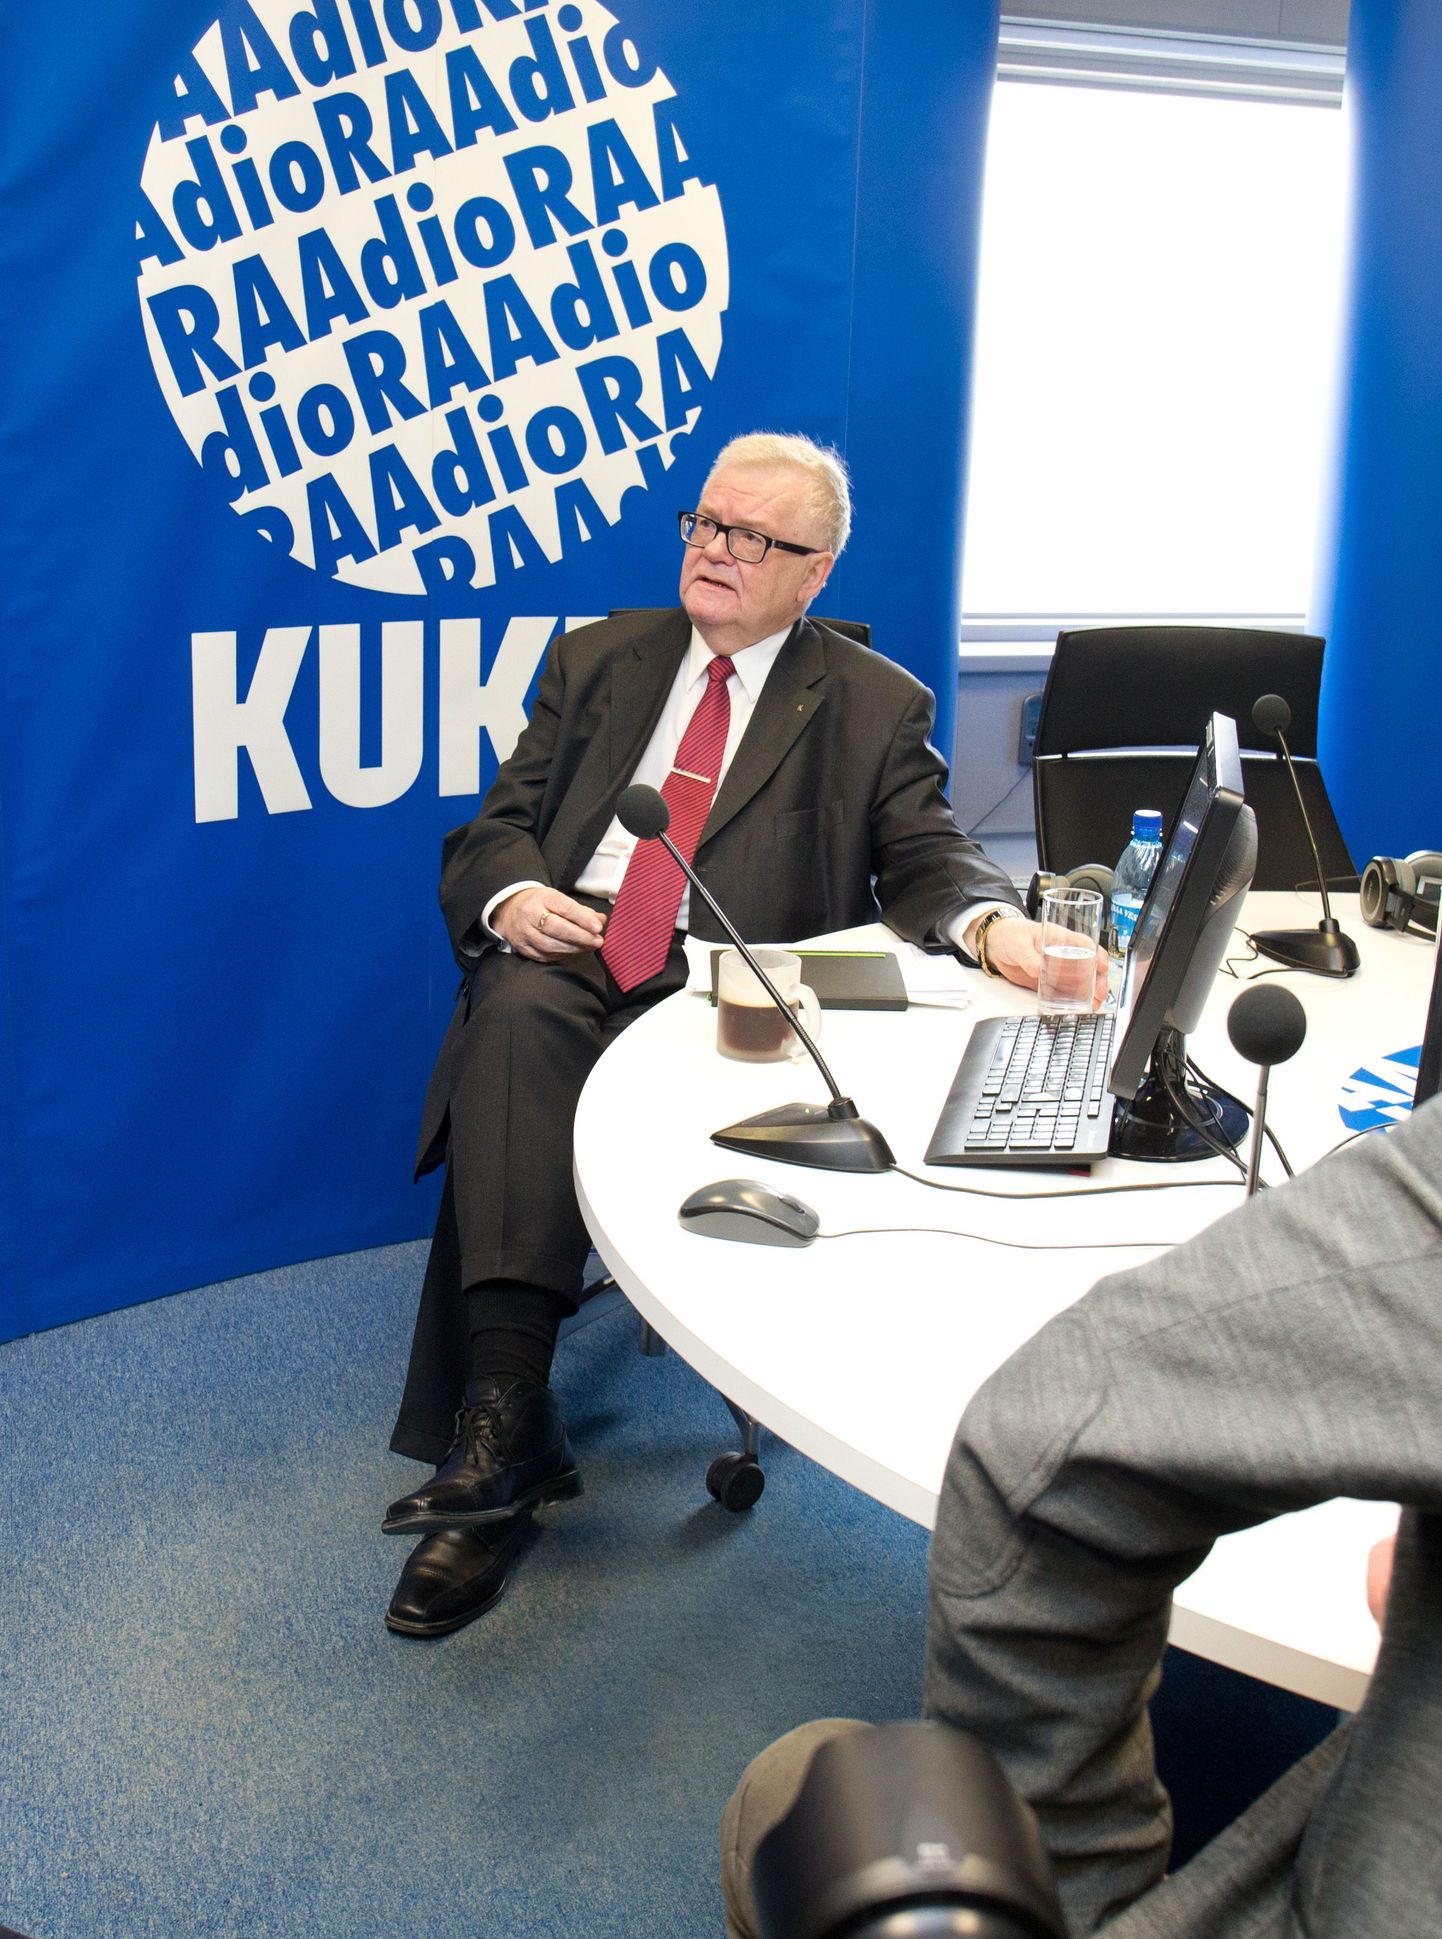 Лидер Центристской партии Эдгар Сависаар на радио Kuku во время предвыборных дебатов.